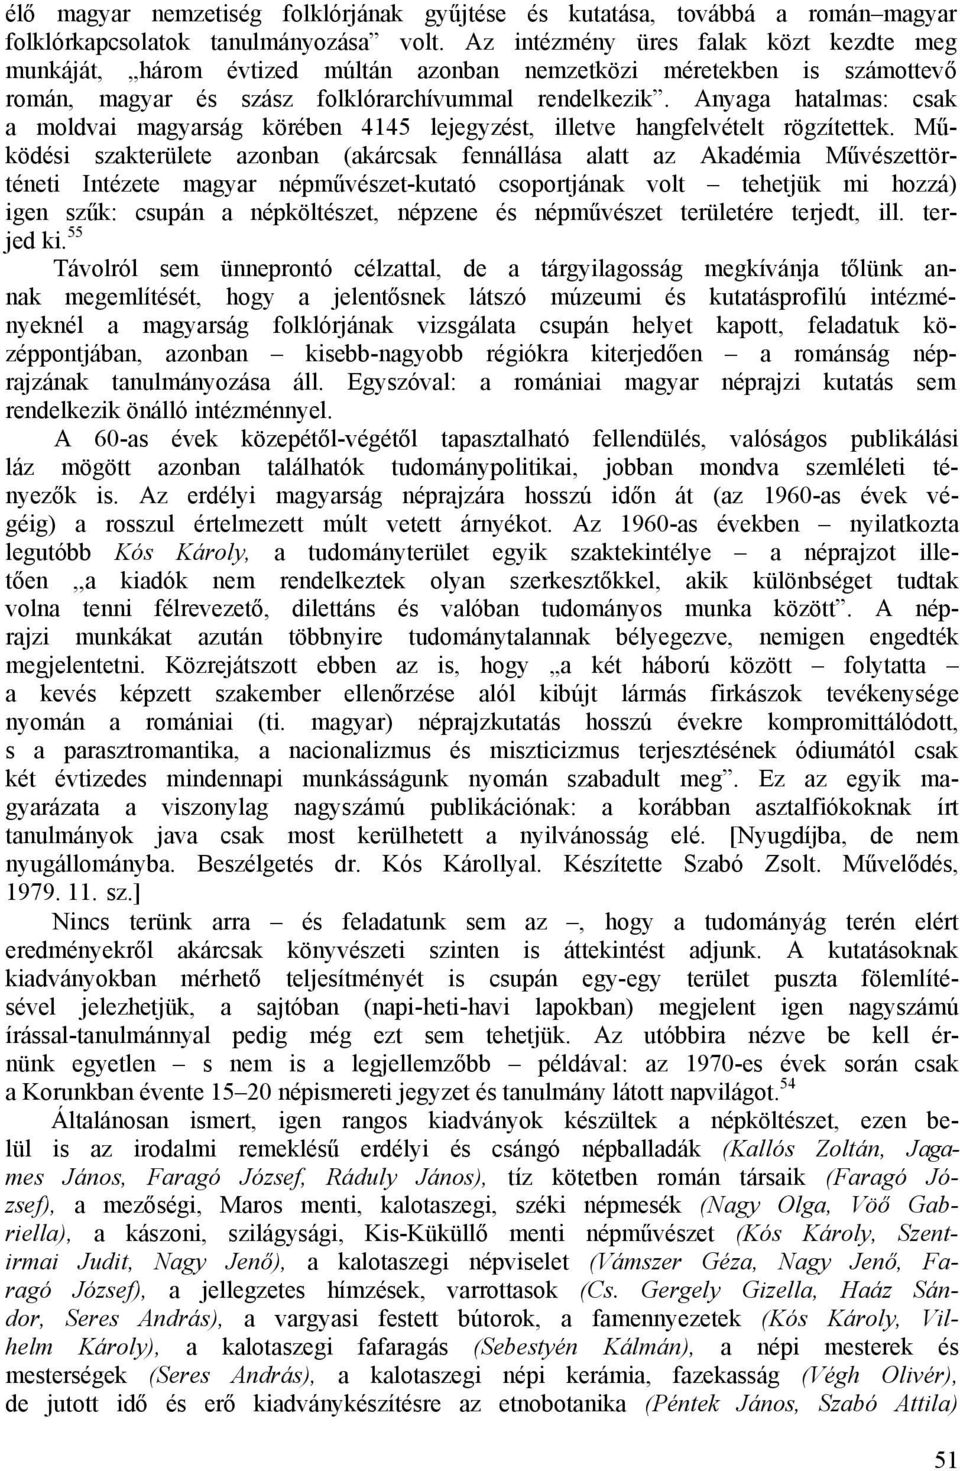 Anyaga hatalmas: csak a moldvai magyarság körében 4145 lejegyzést, illetve hangfelvételt rögzítettek.